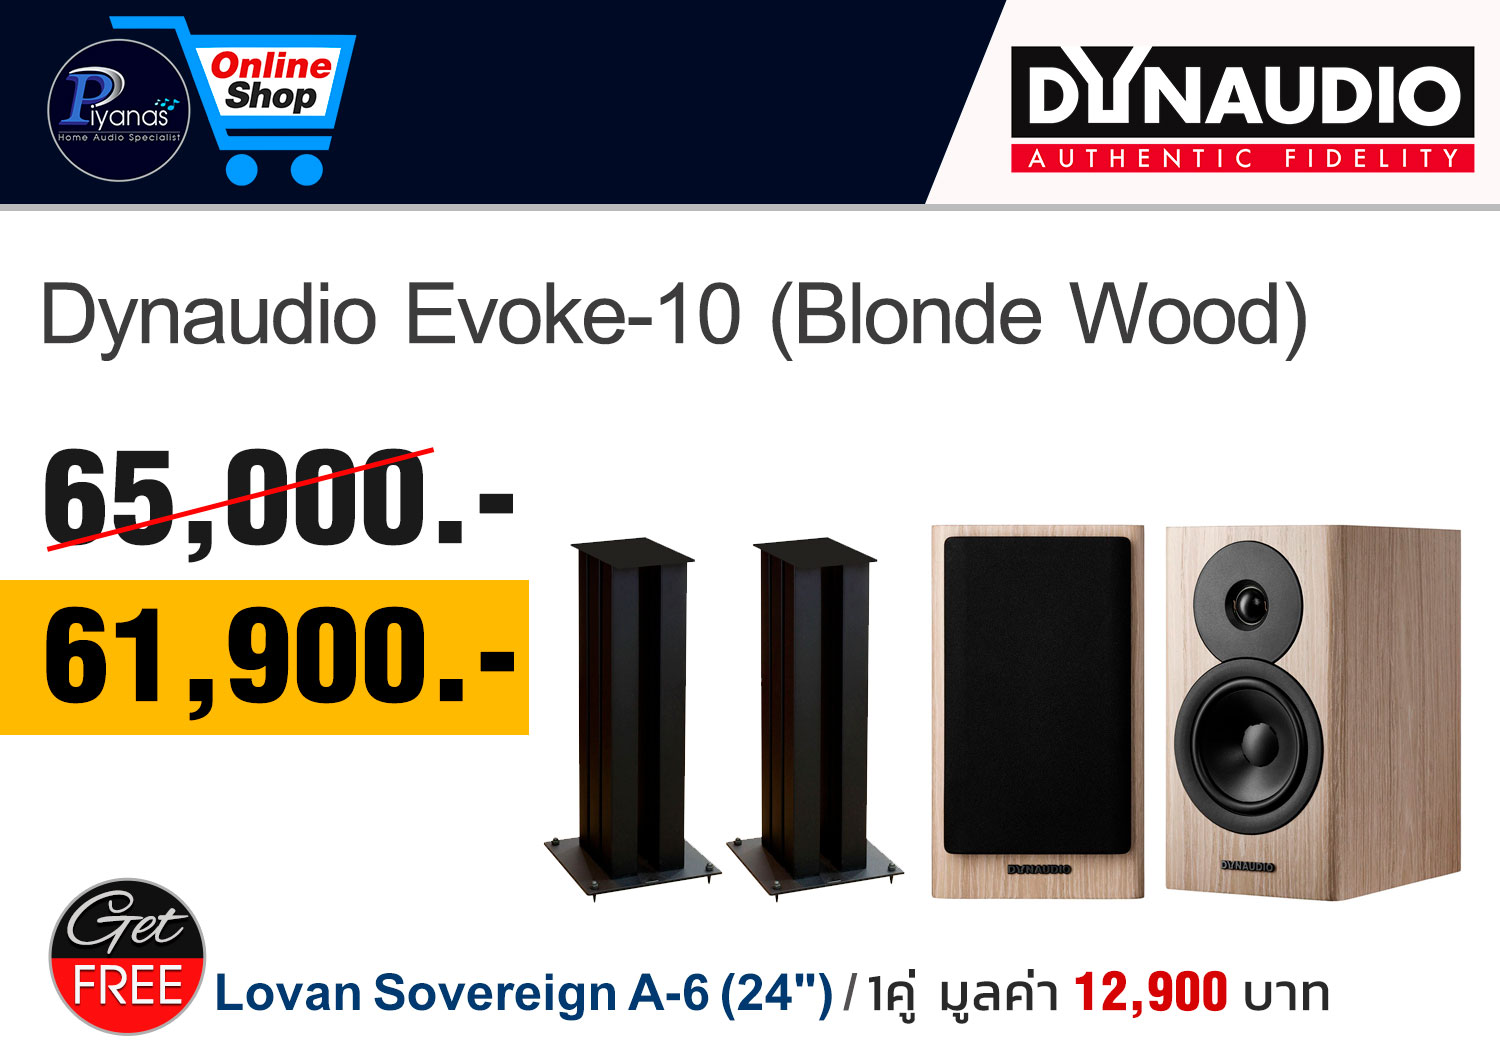 Evoke-10 
(Blonde Wood)